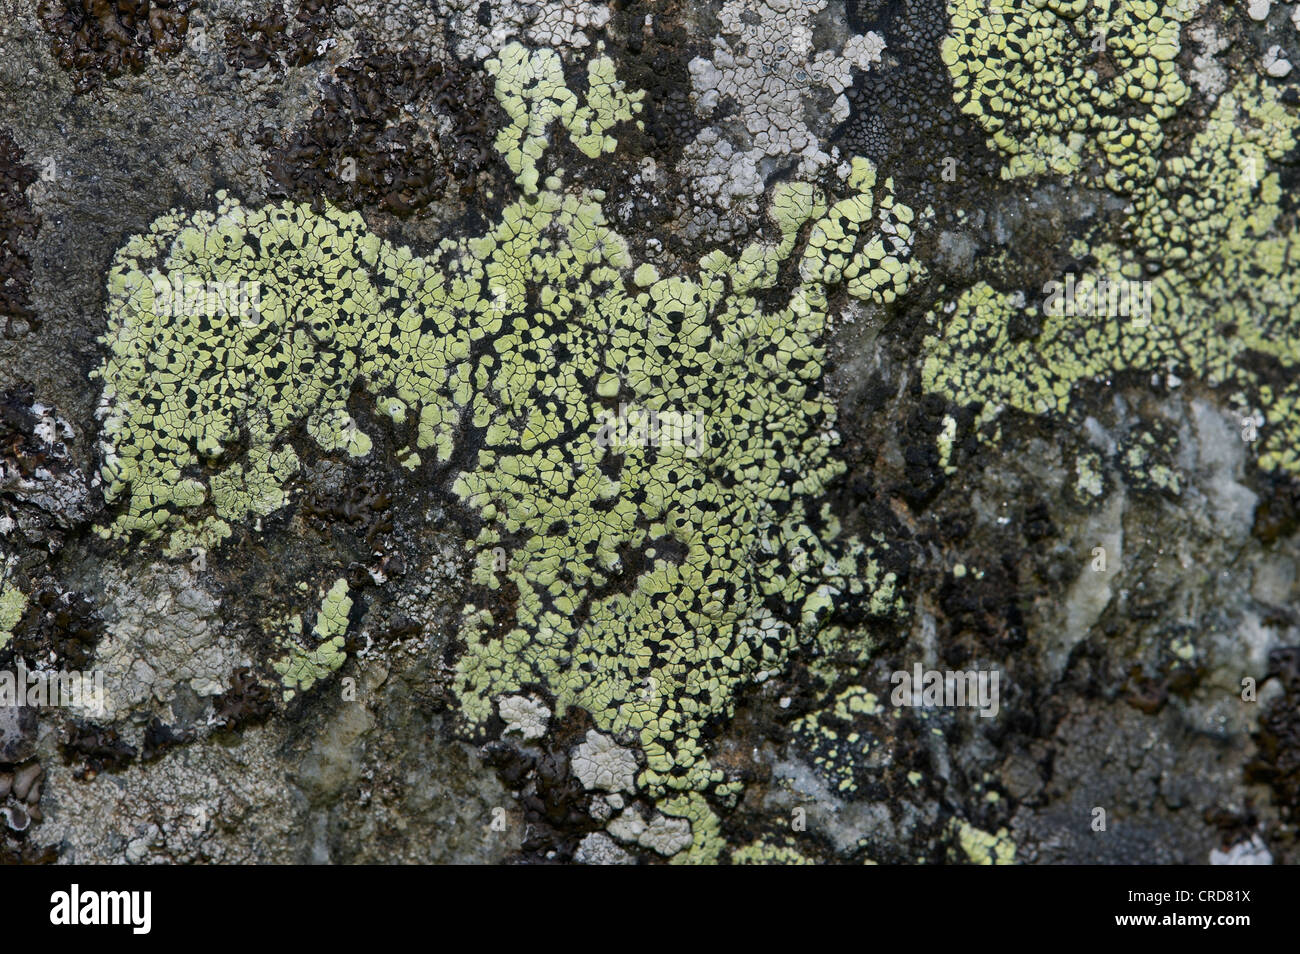 lichens, Pertusaria corallina Stock Photo